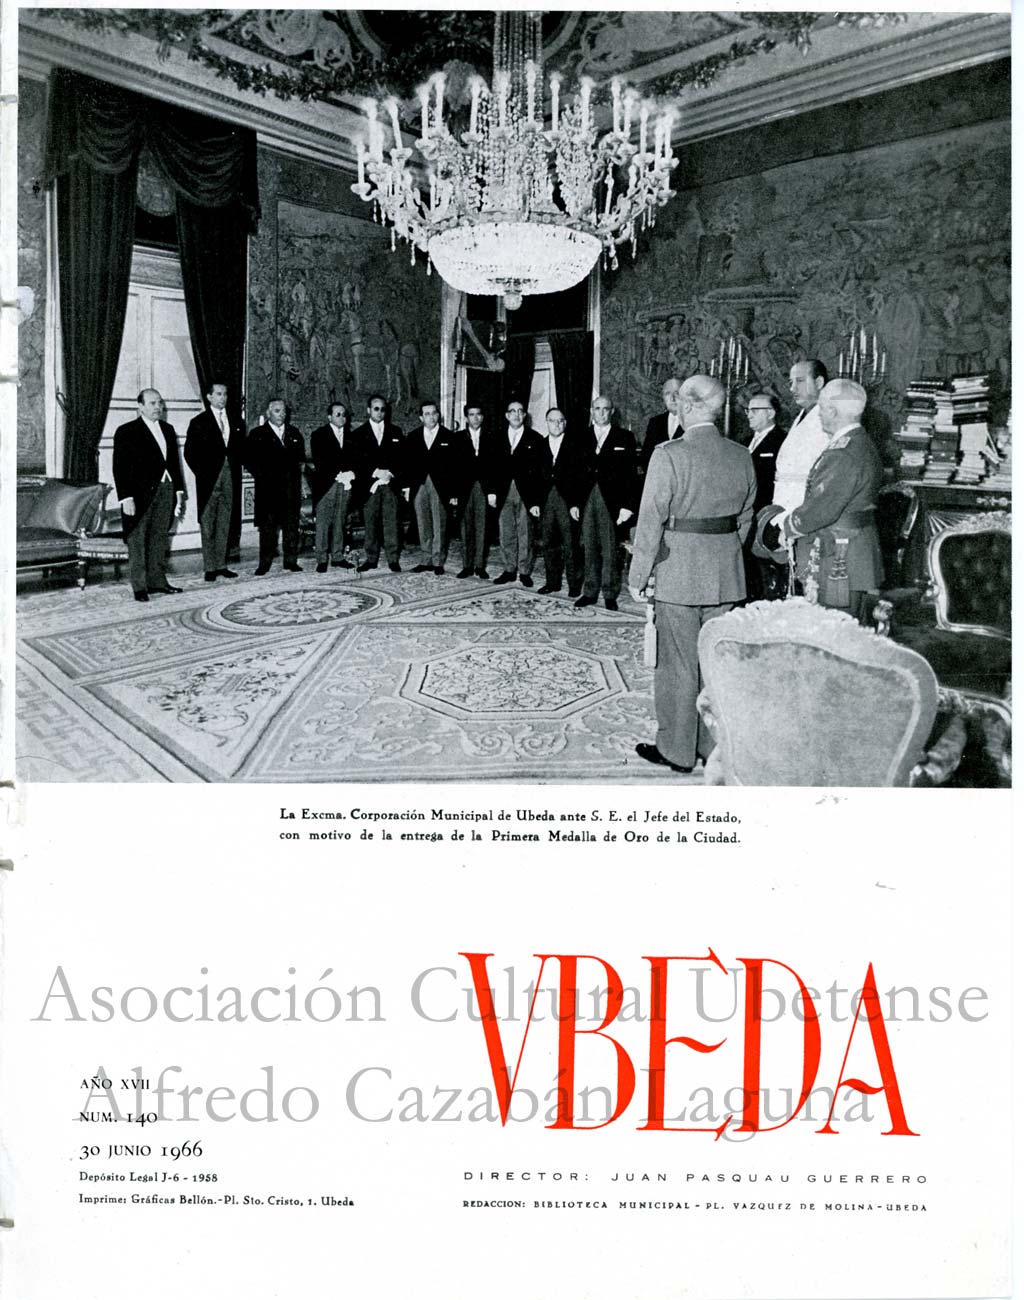 Revista Vbeda. AÃ±o 17. NÂº 140 de 30 de junio de 1966